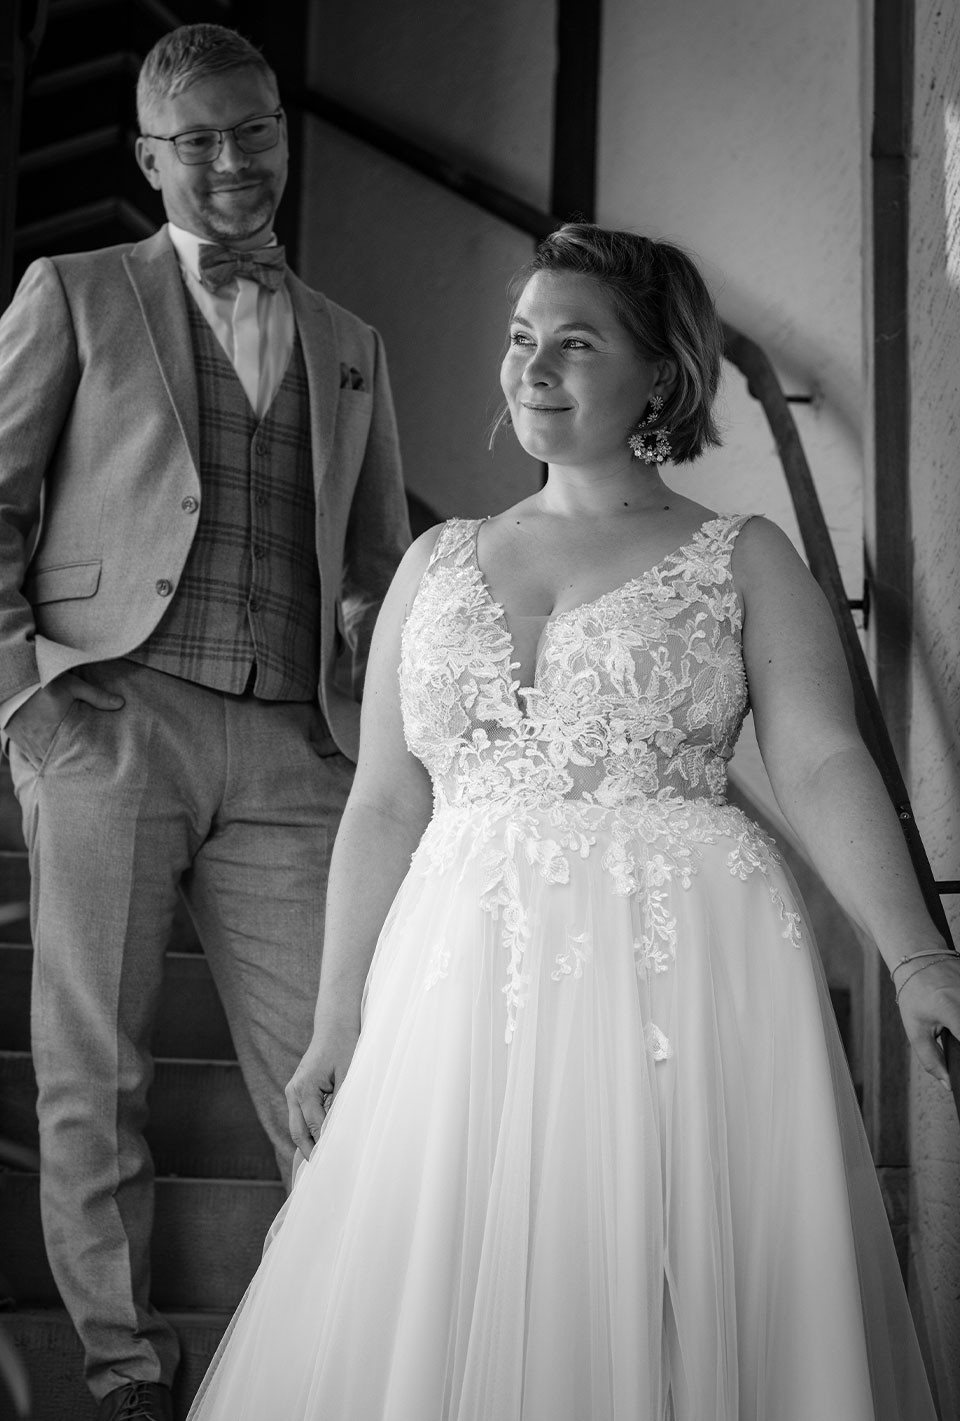 Braut und Bräutigam stehen auf einer Treppe, die Braut trägt ein Spitzenhochzeitskleid und der Bräutigam einen Anzug mit Weste und Fliege.